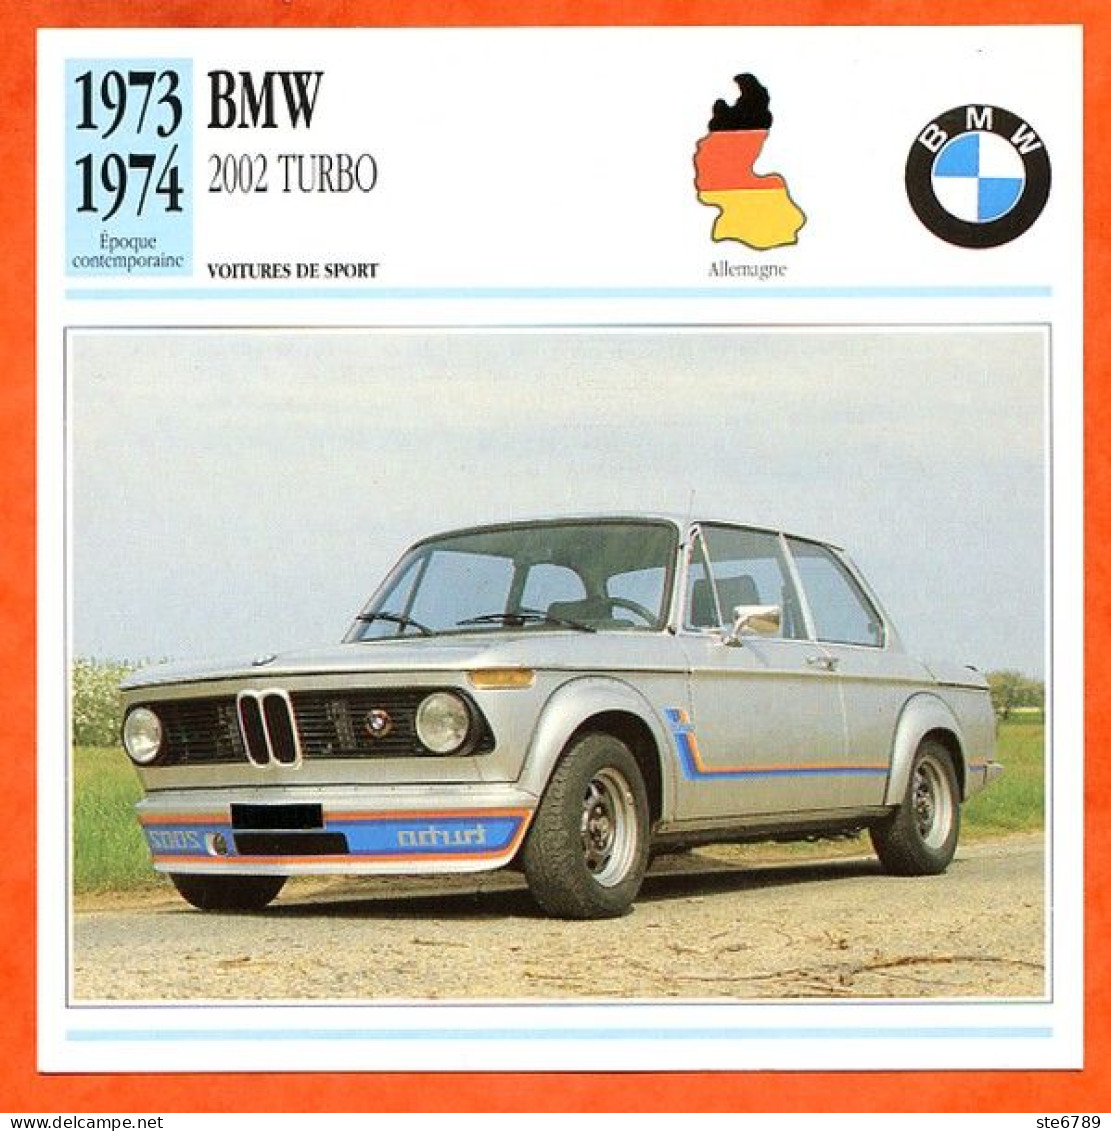 BMW 2002 TURBO 1973 Voiture De Sport Allemagne Fiche Technique Automobile - Voitures